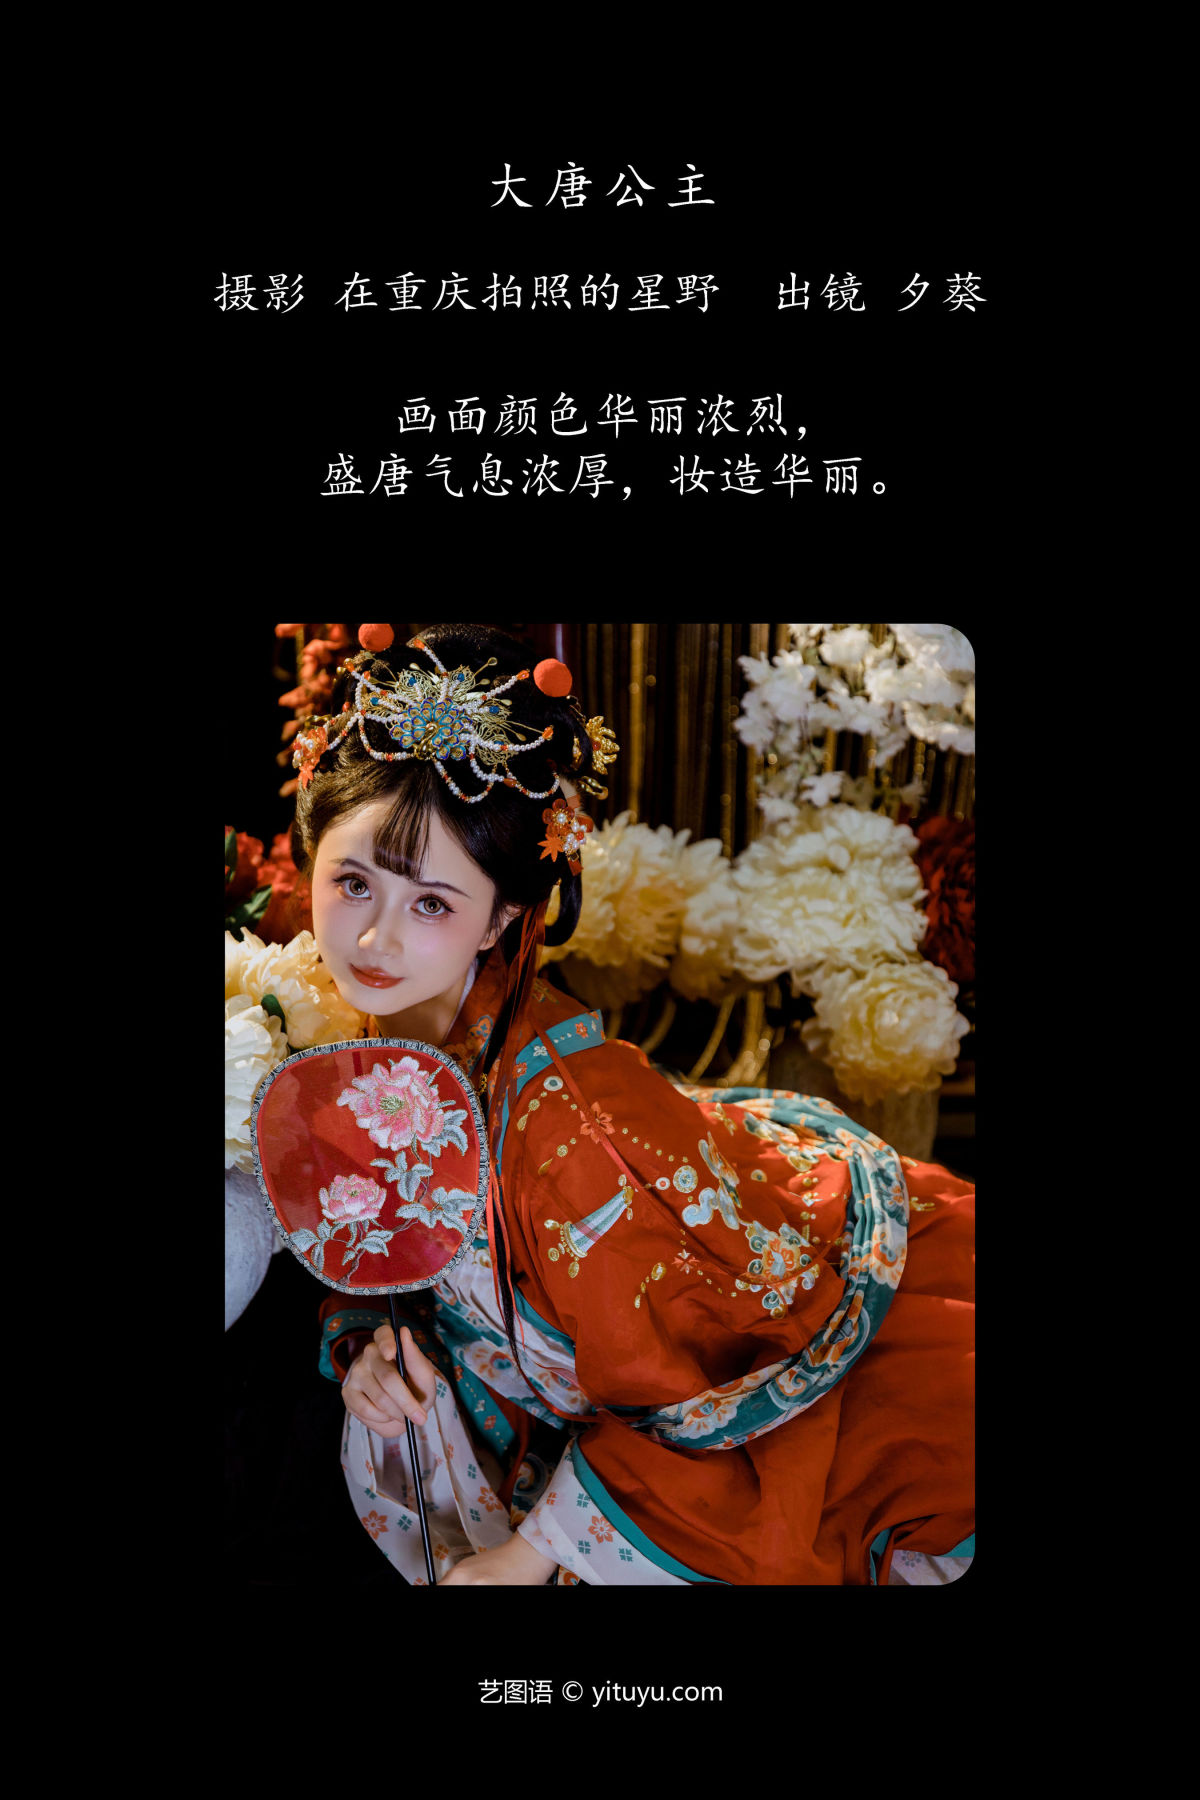 在重庆拍照的星野_夕葵《大唐公主》美图作品图片2